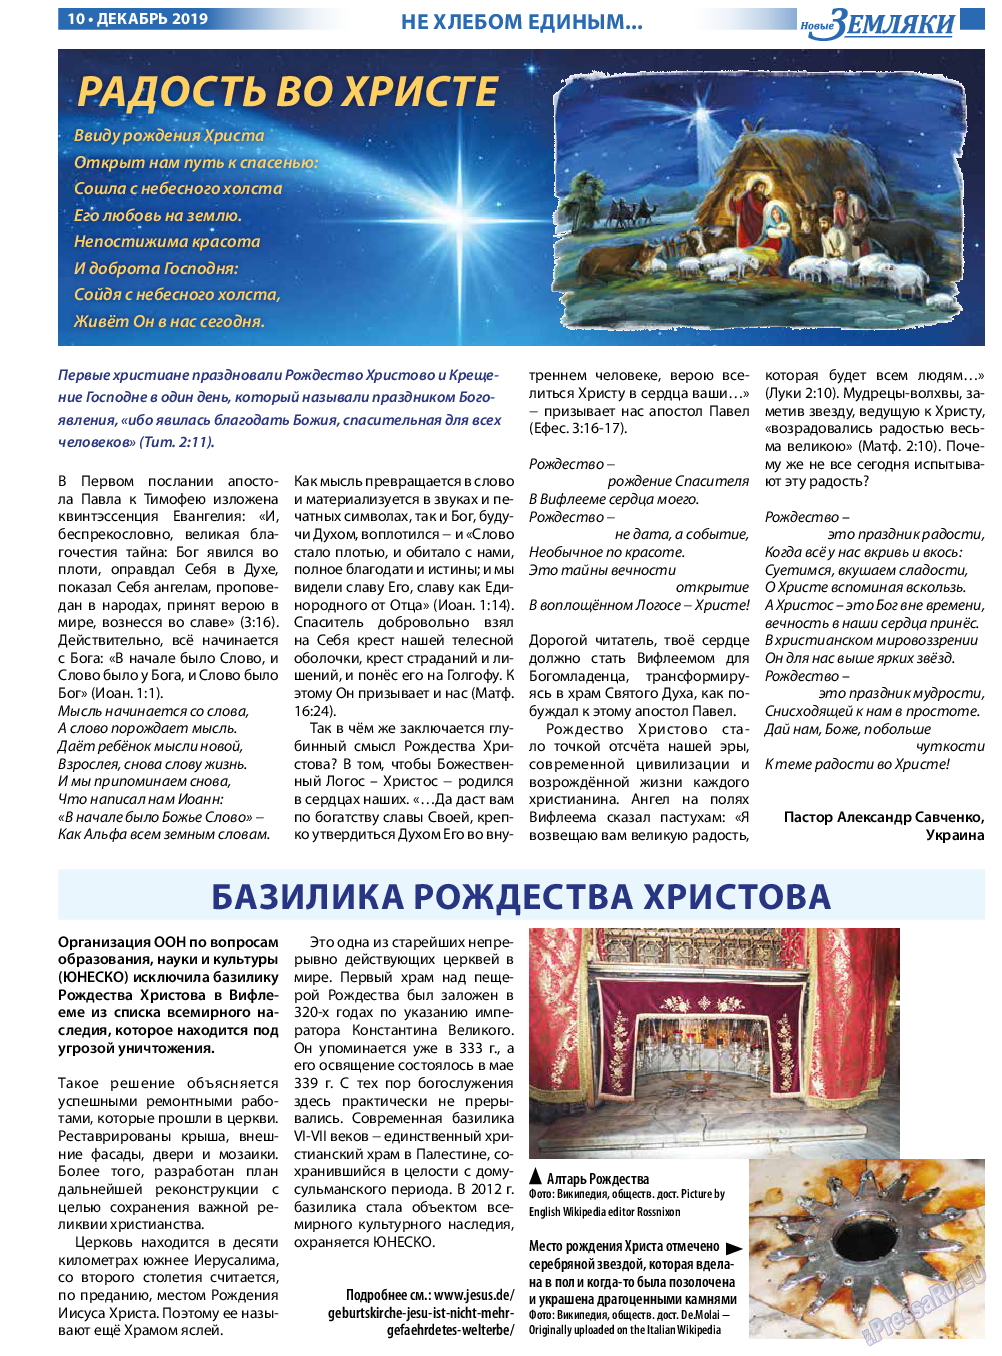 Новые Земляки, газета. 2019 №12 стр.10